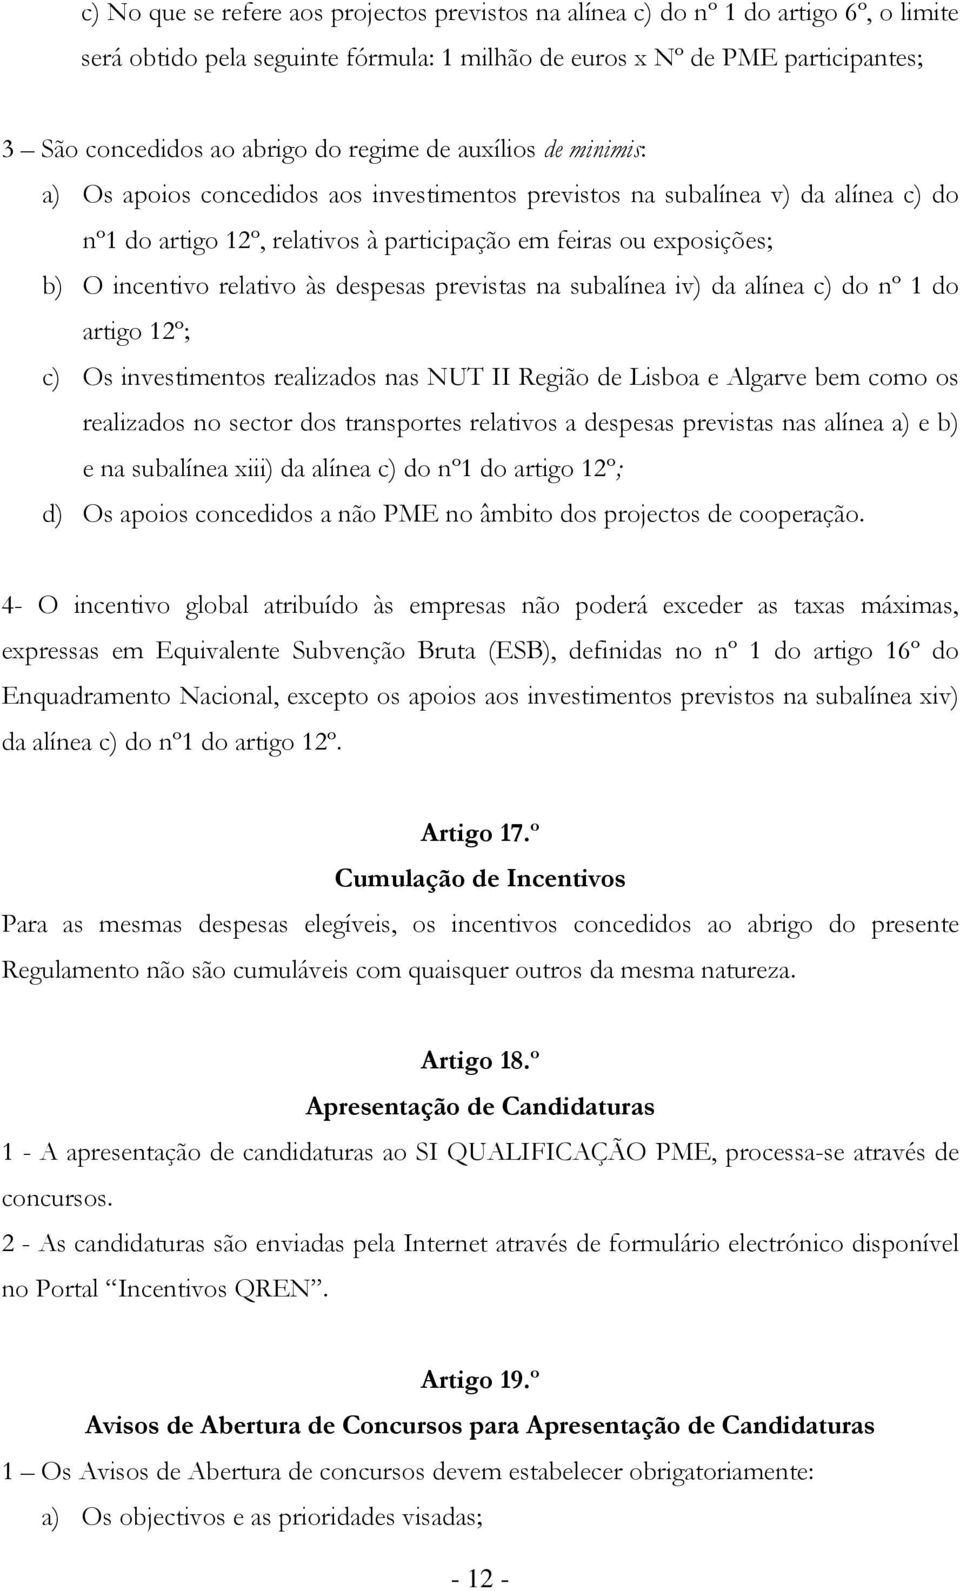 relativo às despesas previstas na subalínea iv) da alínea c) do nº 1 do artigo 12º; c) Os investimentos realizados nas NUT II Região de Lisboa e Algarve bem como os realizados no sector dos